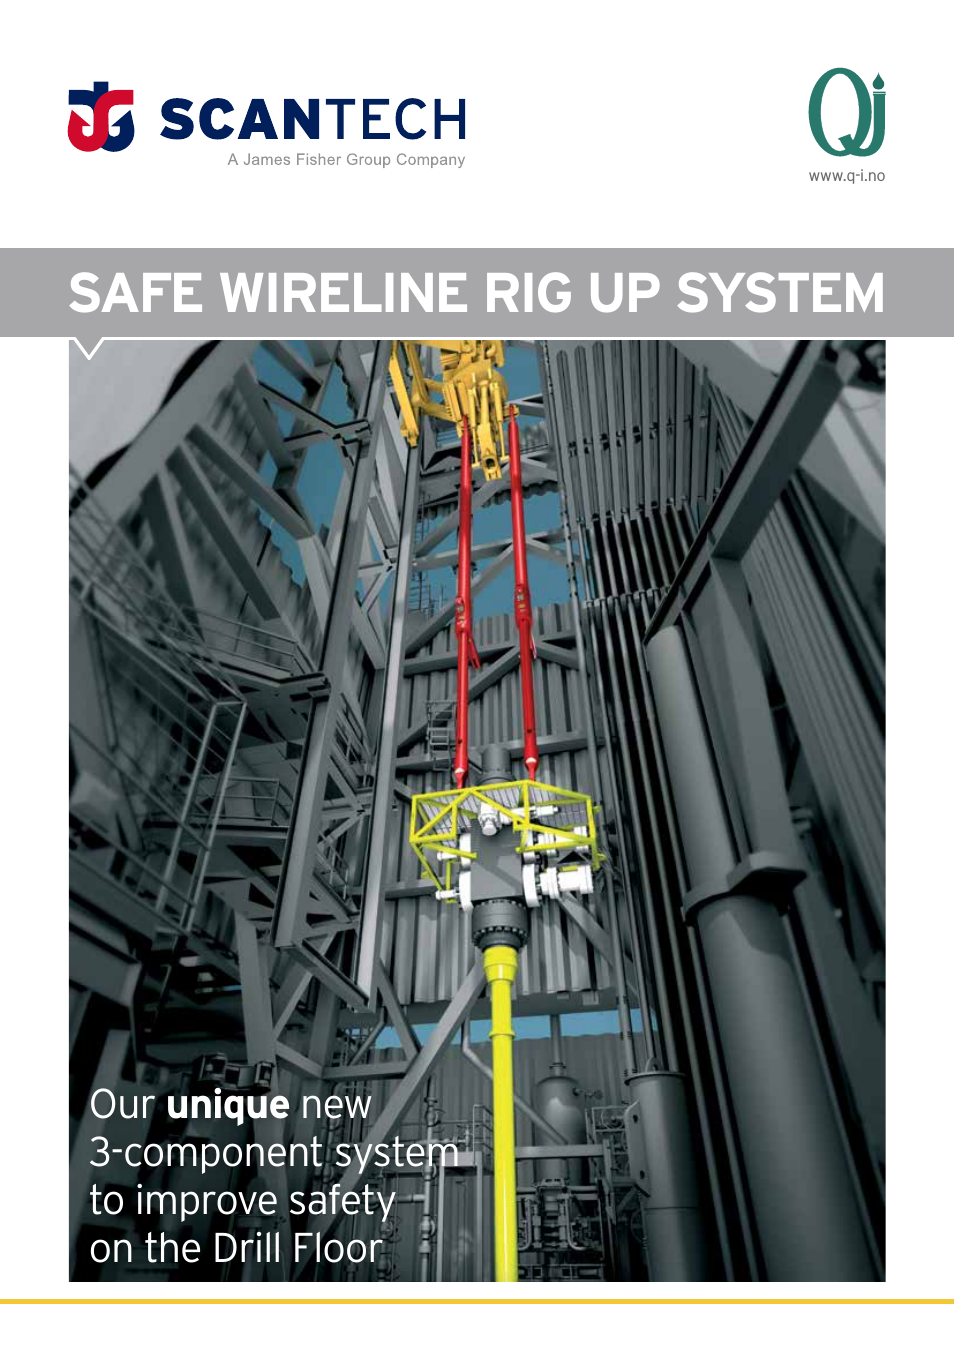 SAFE WIRELINE RIG UP SYSTEM